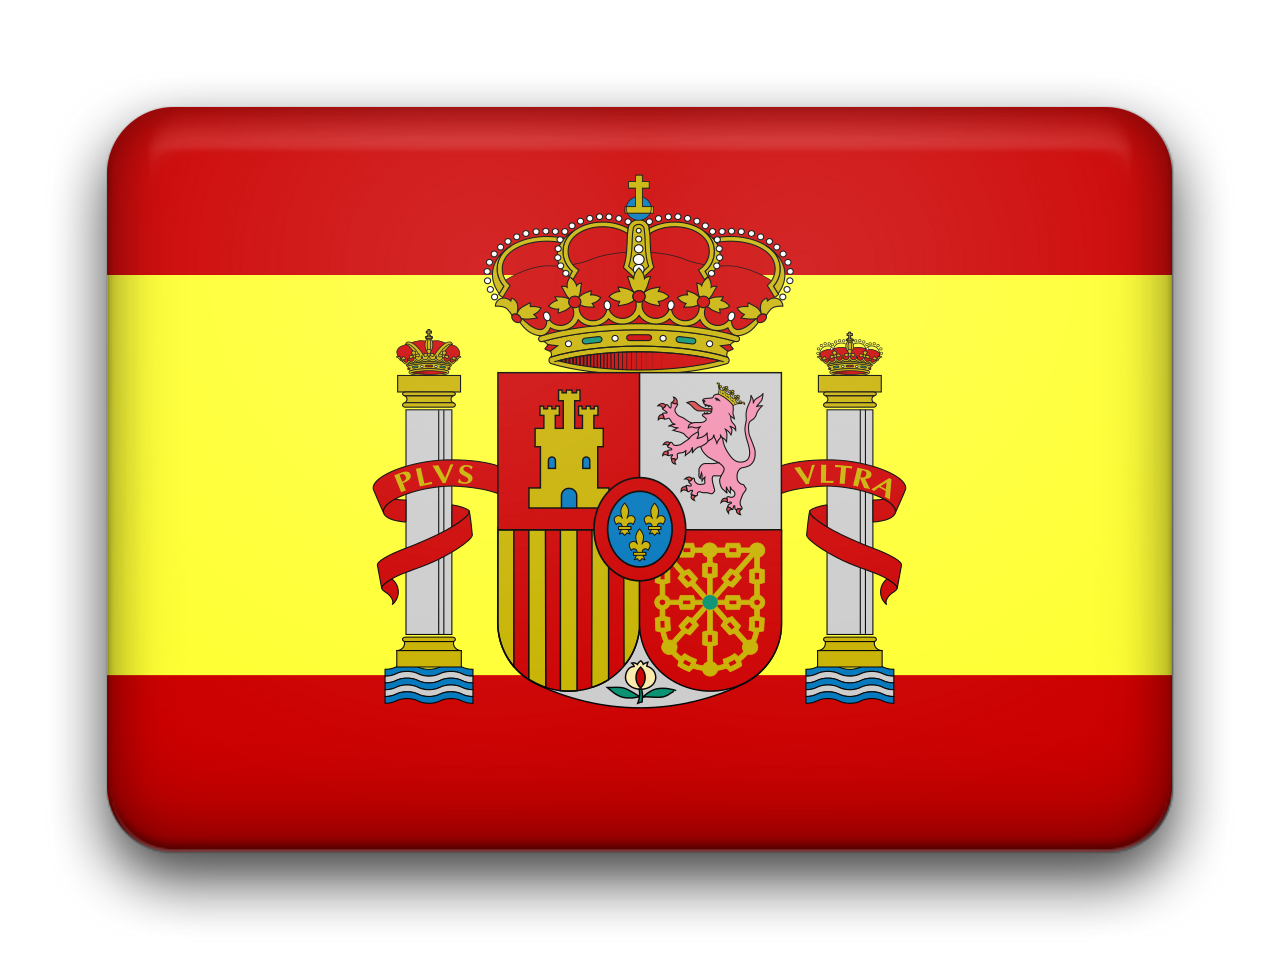 Испания флаг и герб. Флаг королевской Испании. Герб Испании гербы Испании. Испания национальные символы. Испанский герб